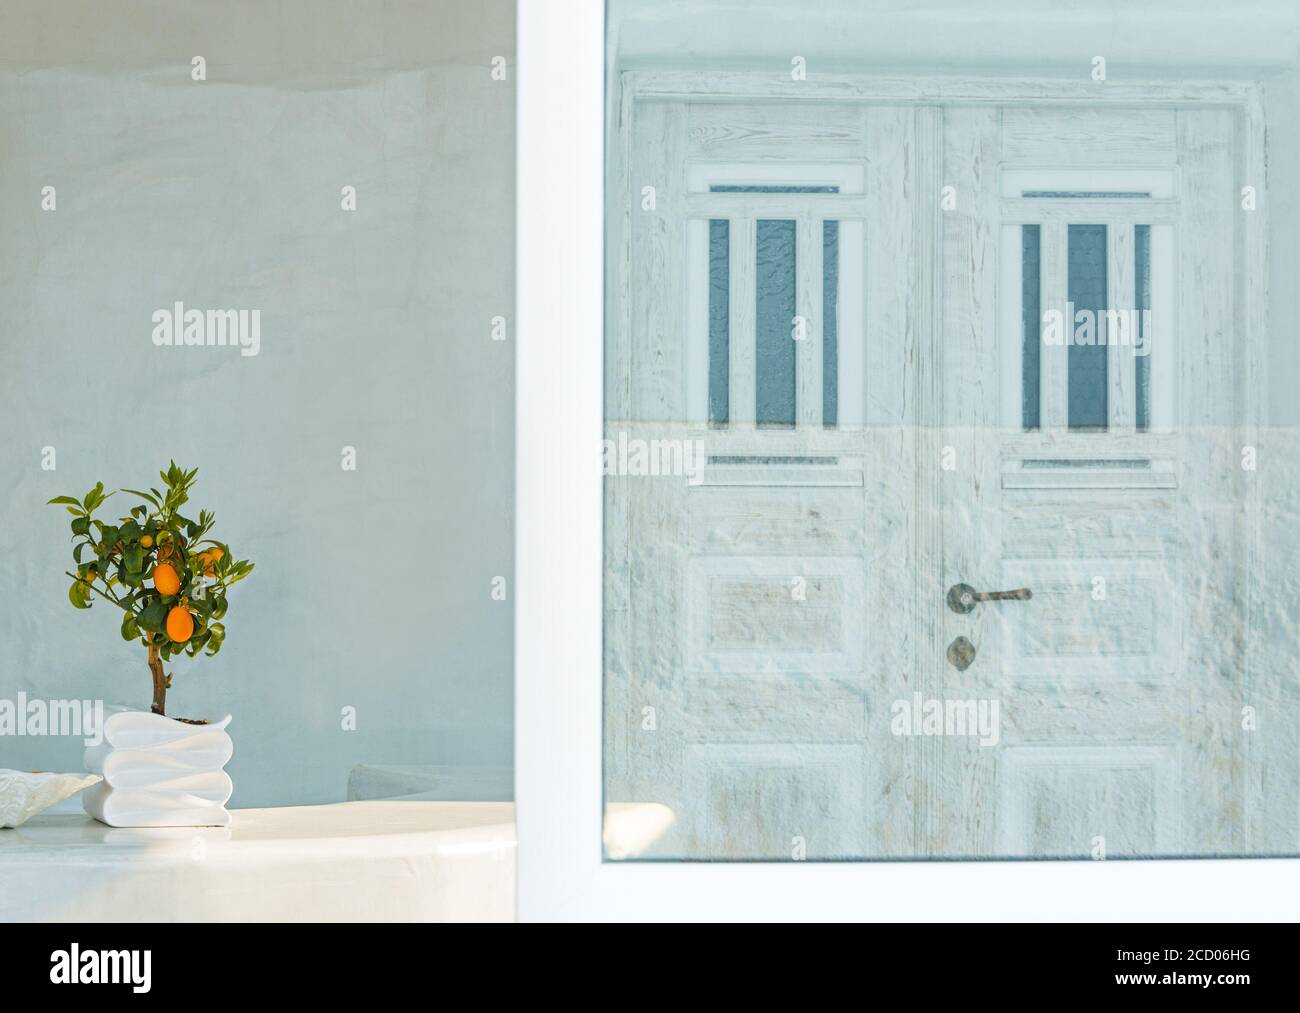 kykladische Atmosphäre in der Stadt Oia, Insel Santorini, mit einem Bonsai-Baum und einer weißen Tür, die sich in einem Spiegel entlang des Weges spiegelt Stockfoto